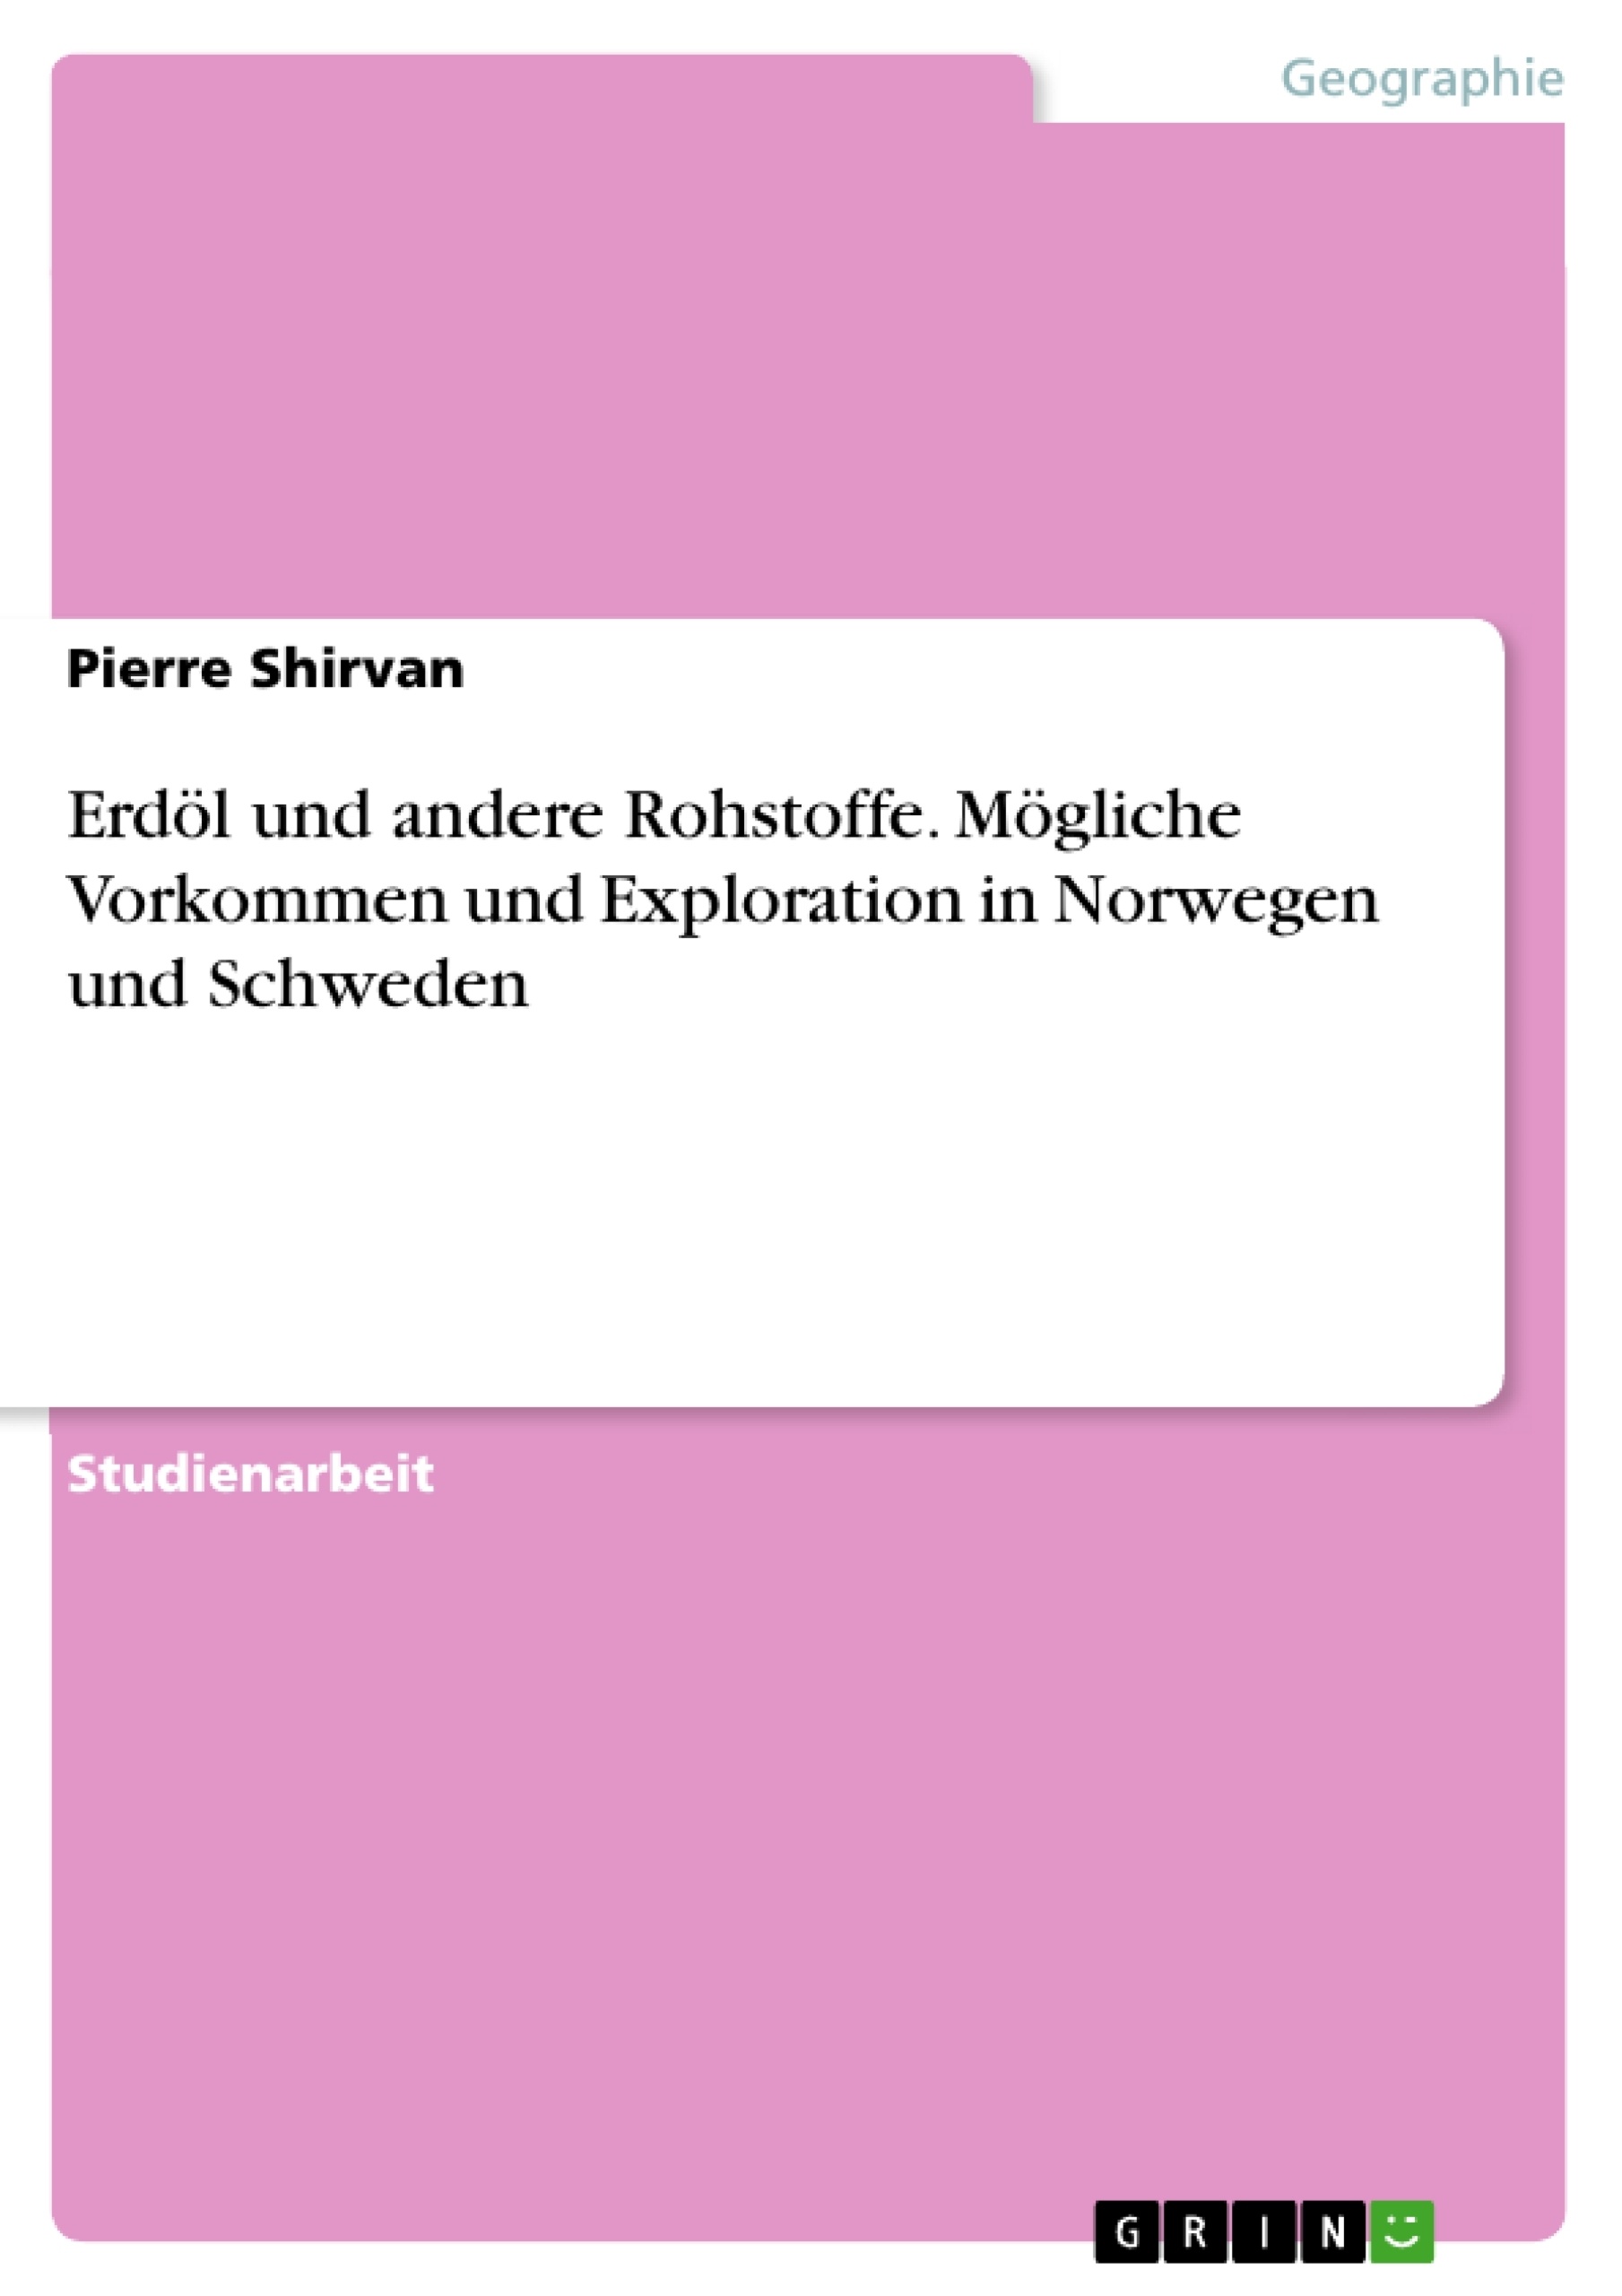 Title: Erdöl und andere Rohstoffe. Mögliche Vorkommen und Exploration in Norwegen und Schweden